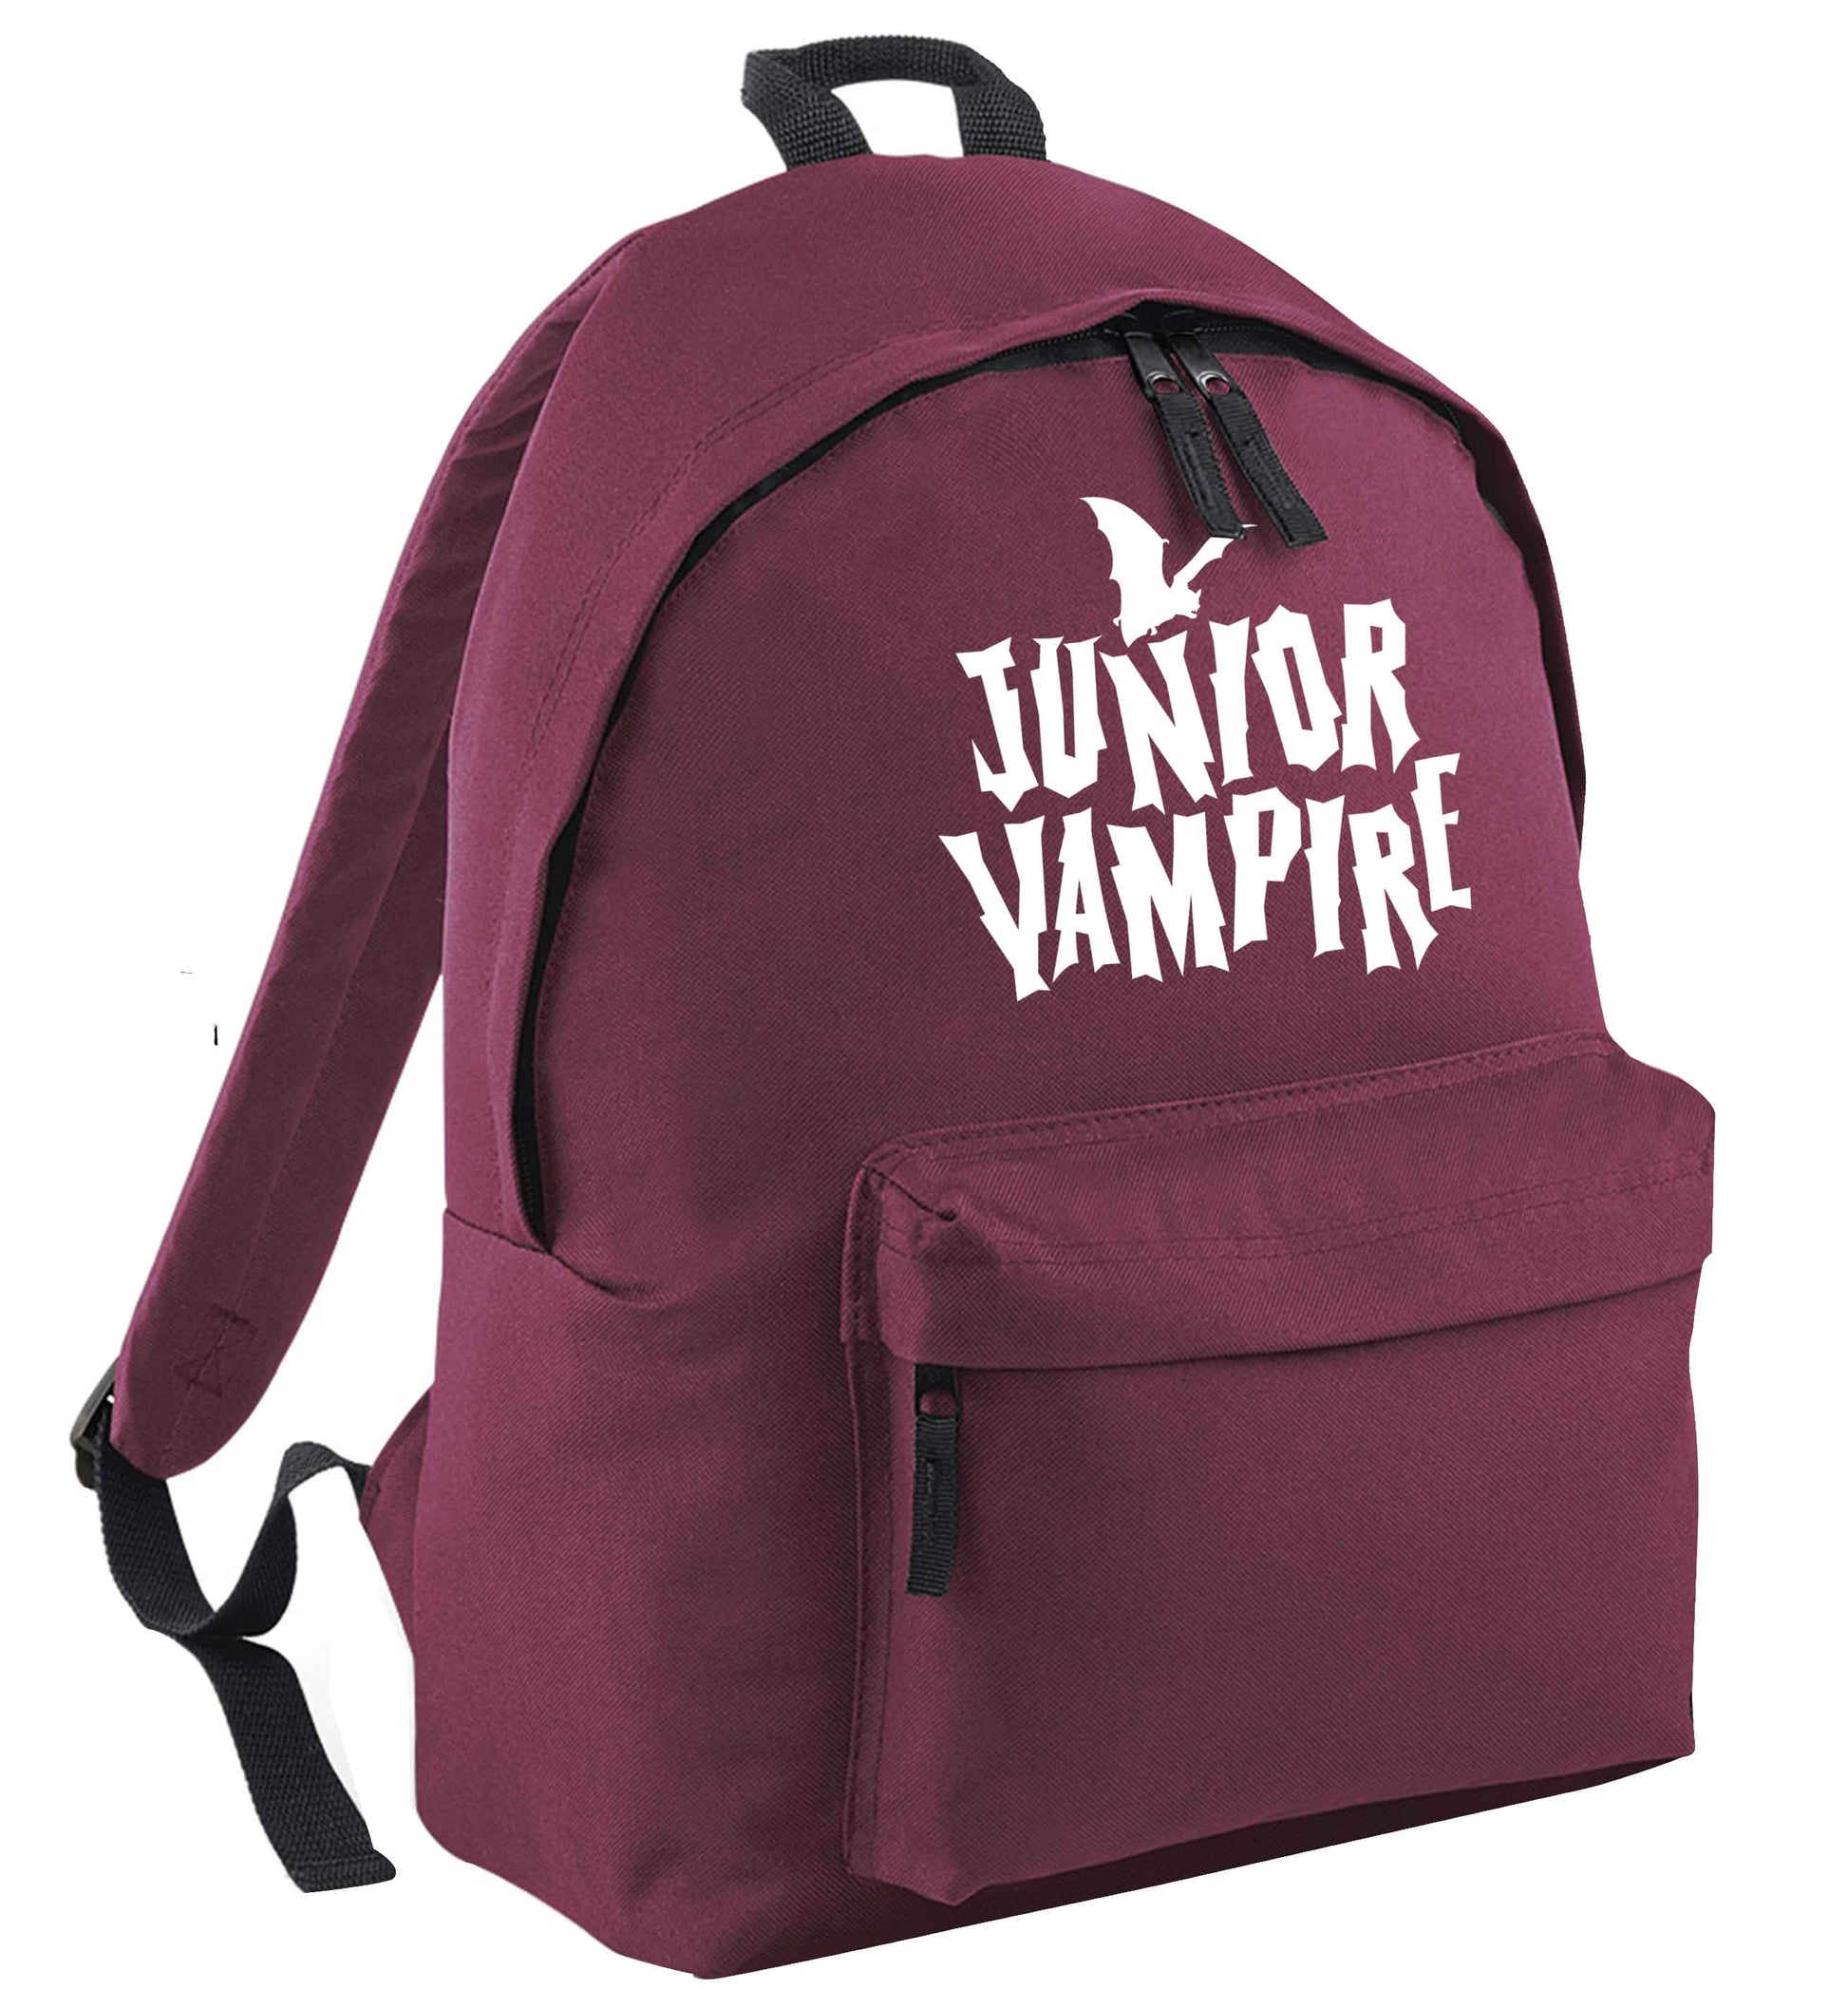 Junior vampire maroon adults backpack